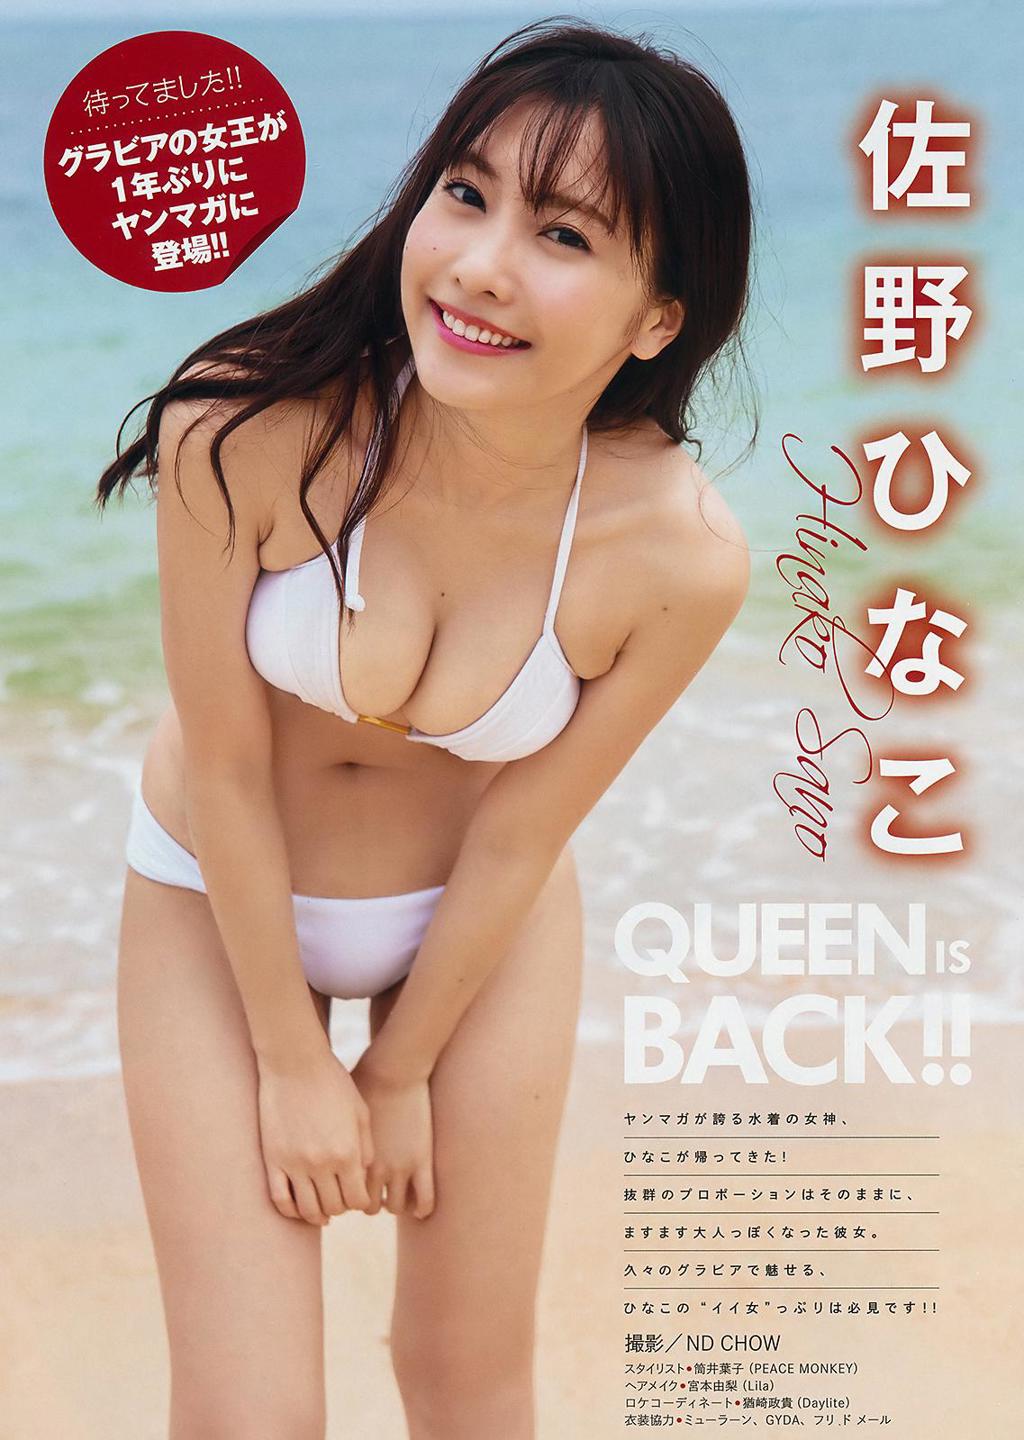 佐野雏子.杂志[Young Magazine] 2019 No.38 (佐野ひなこ 大江穂乃佳)